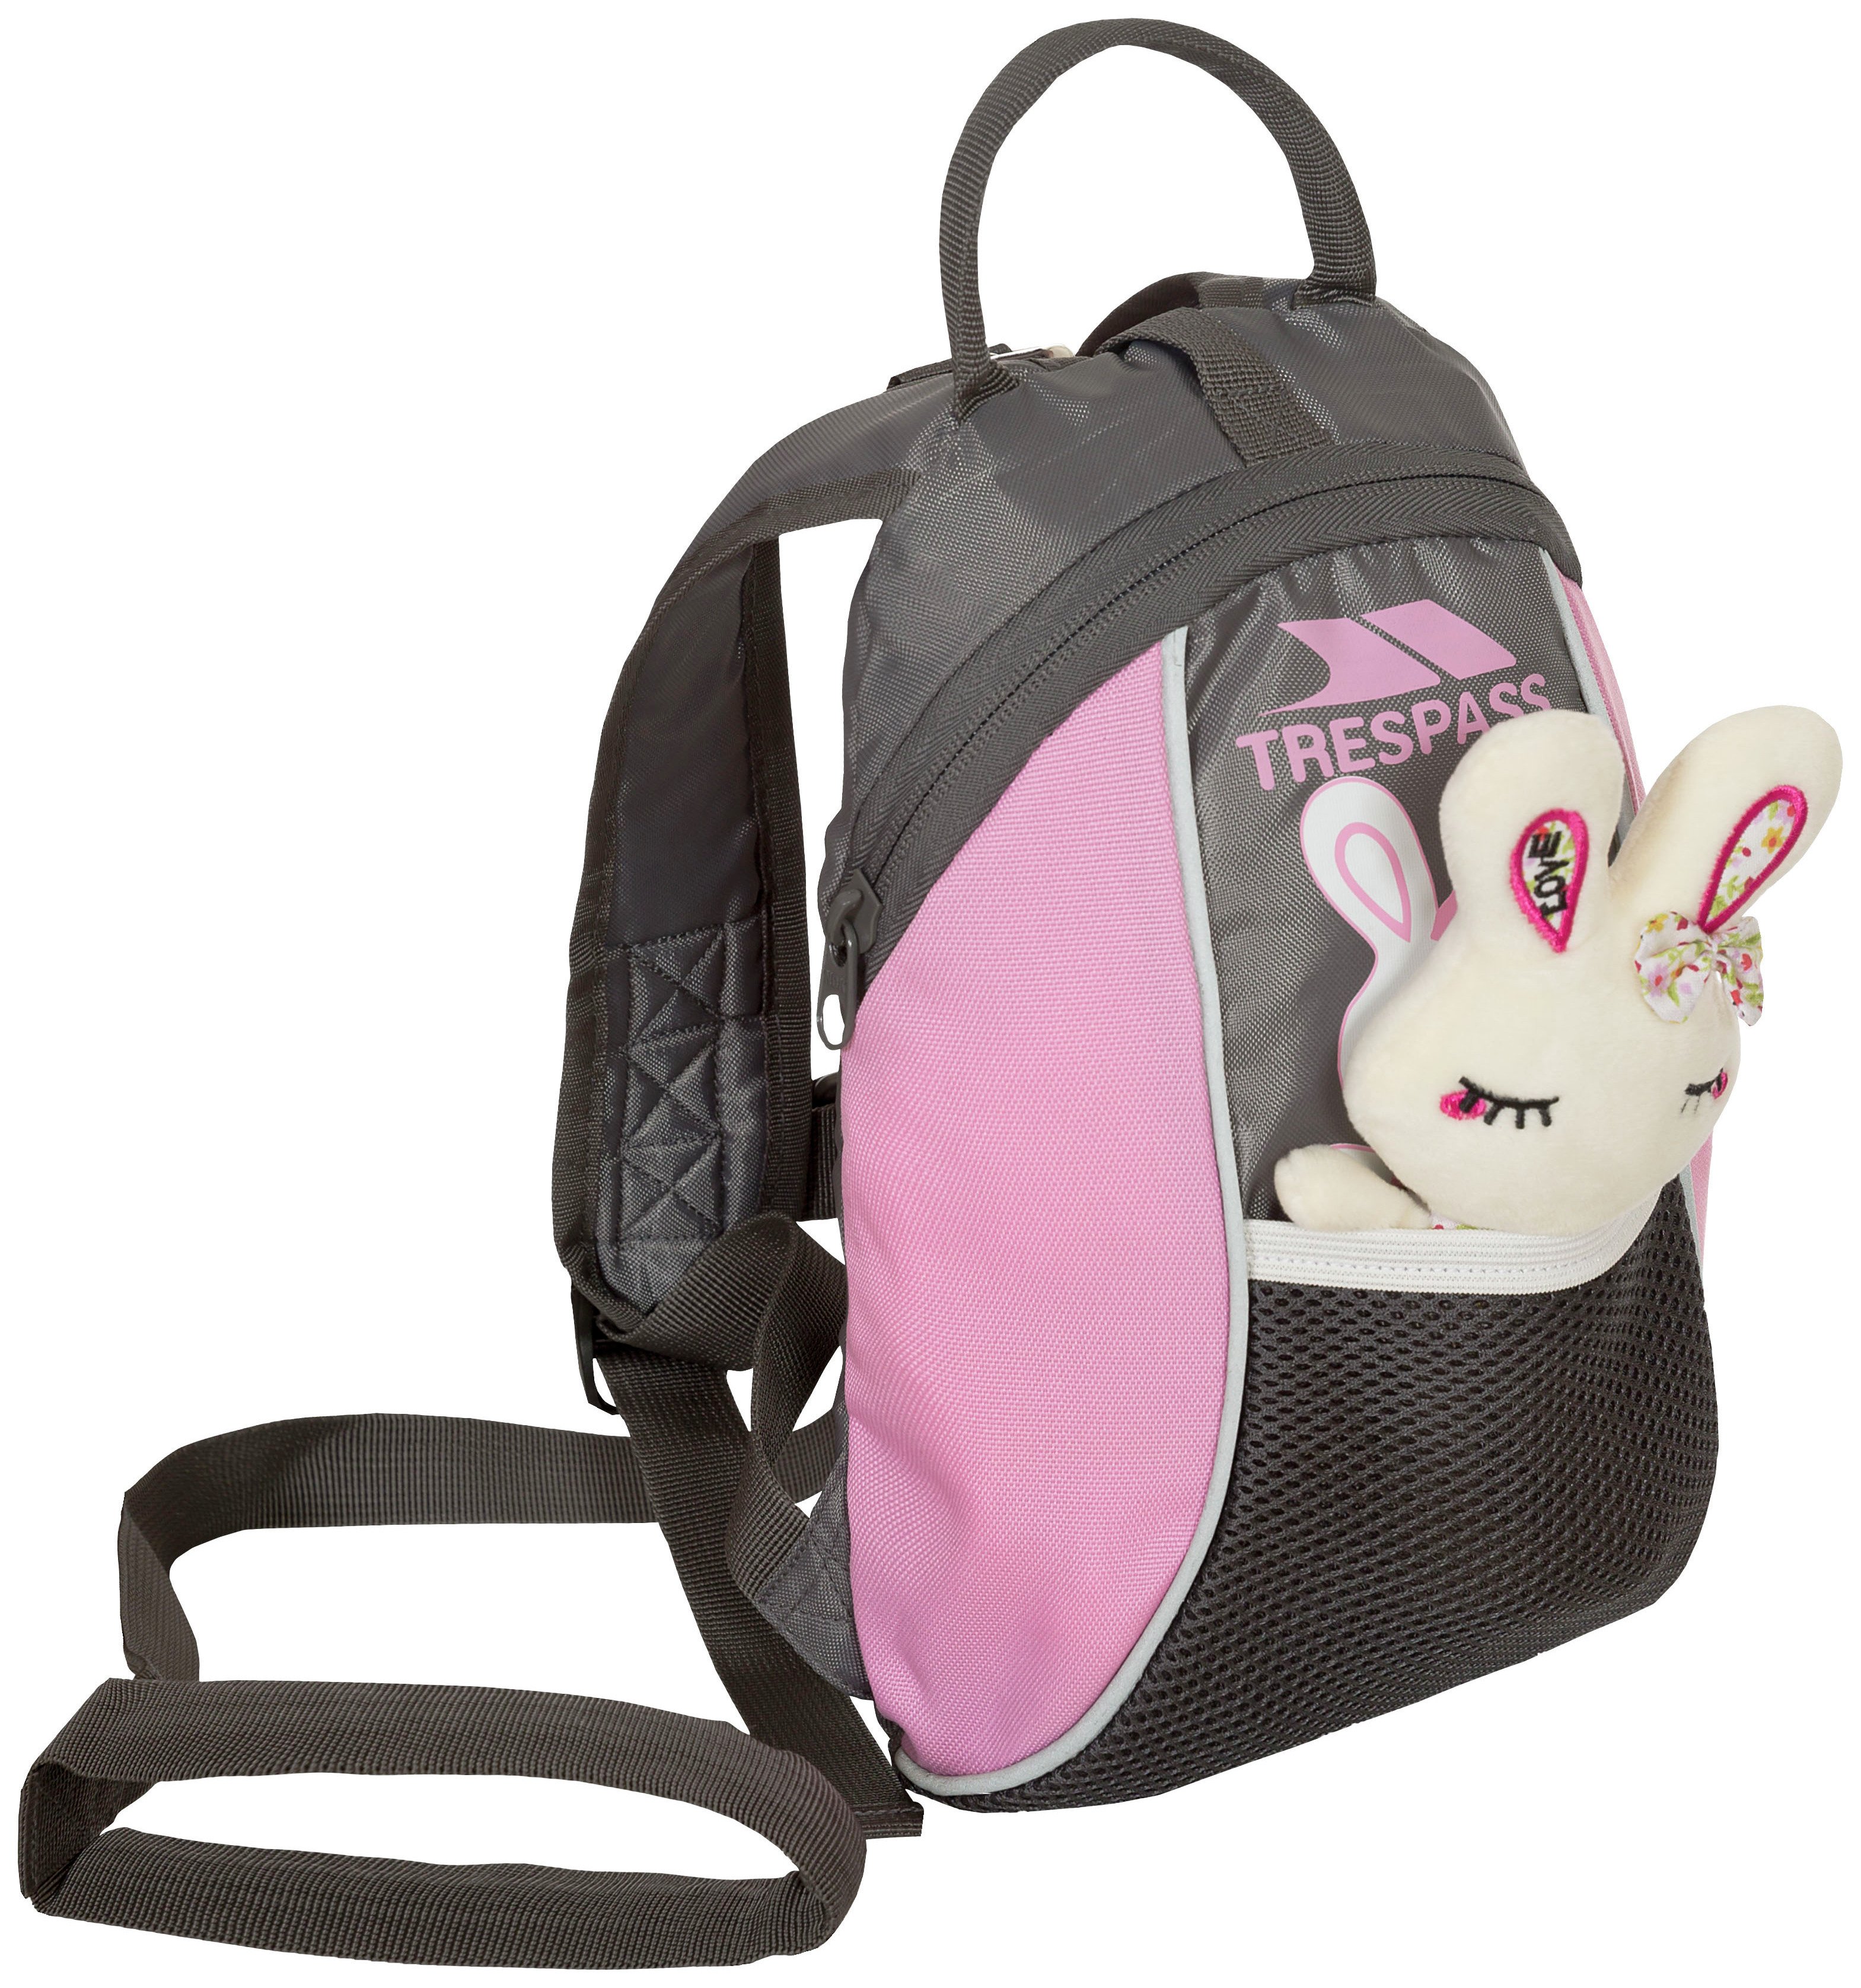 Trespass Rabbit Reins Backpack